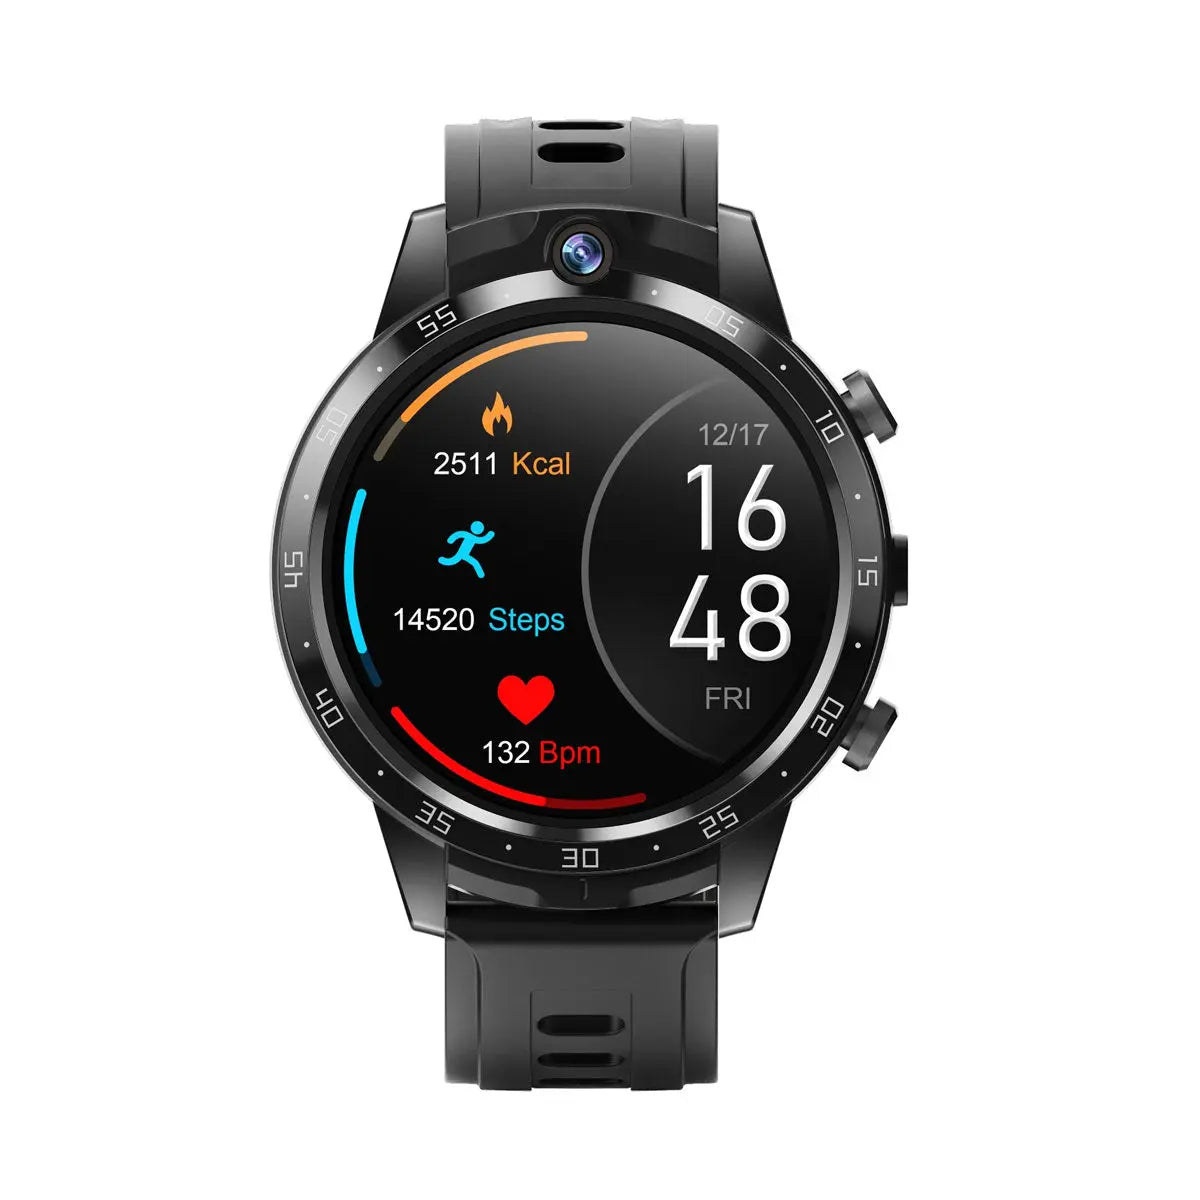 Smartwatch Reloj Android X600S Fralugio 2 Cámaras Wifi 4G NFC